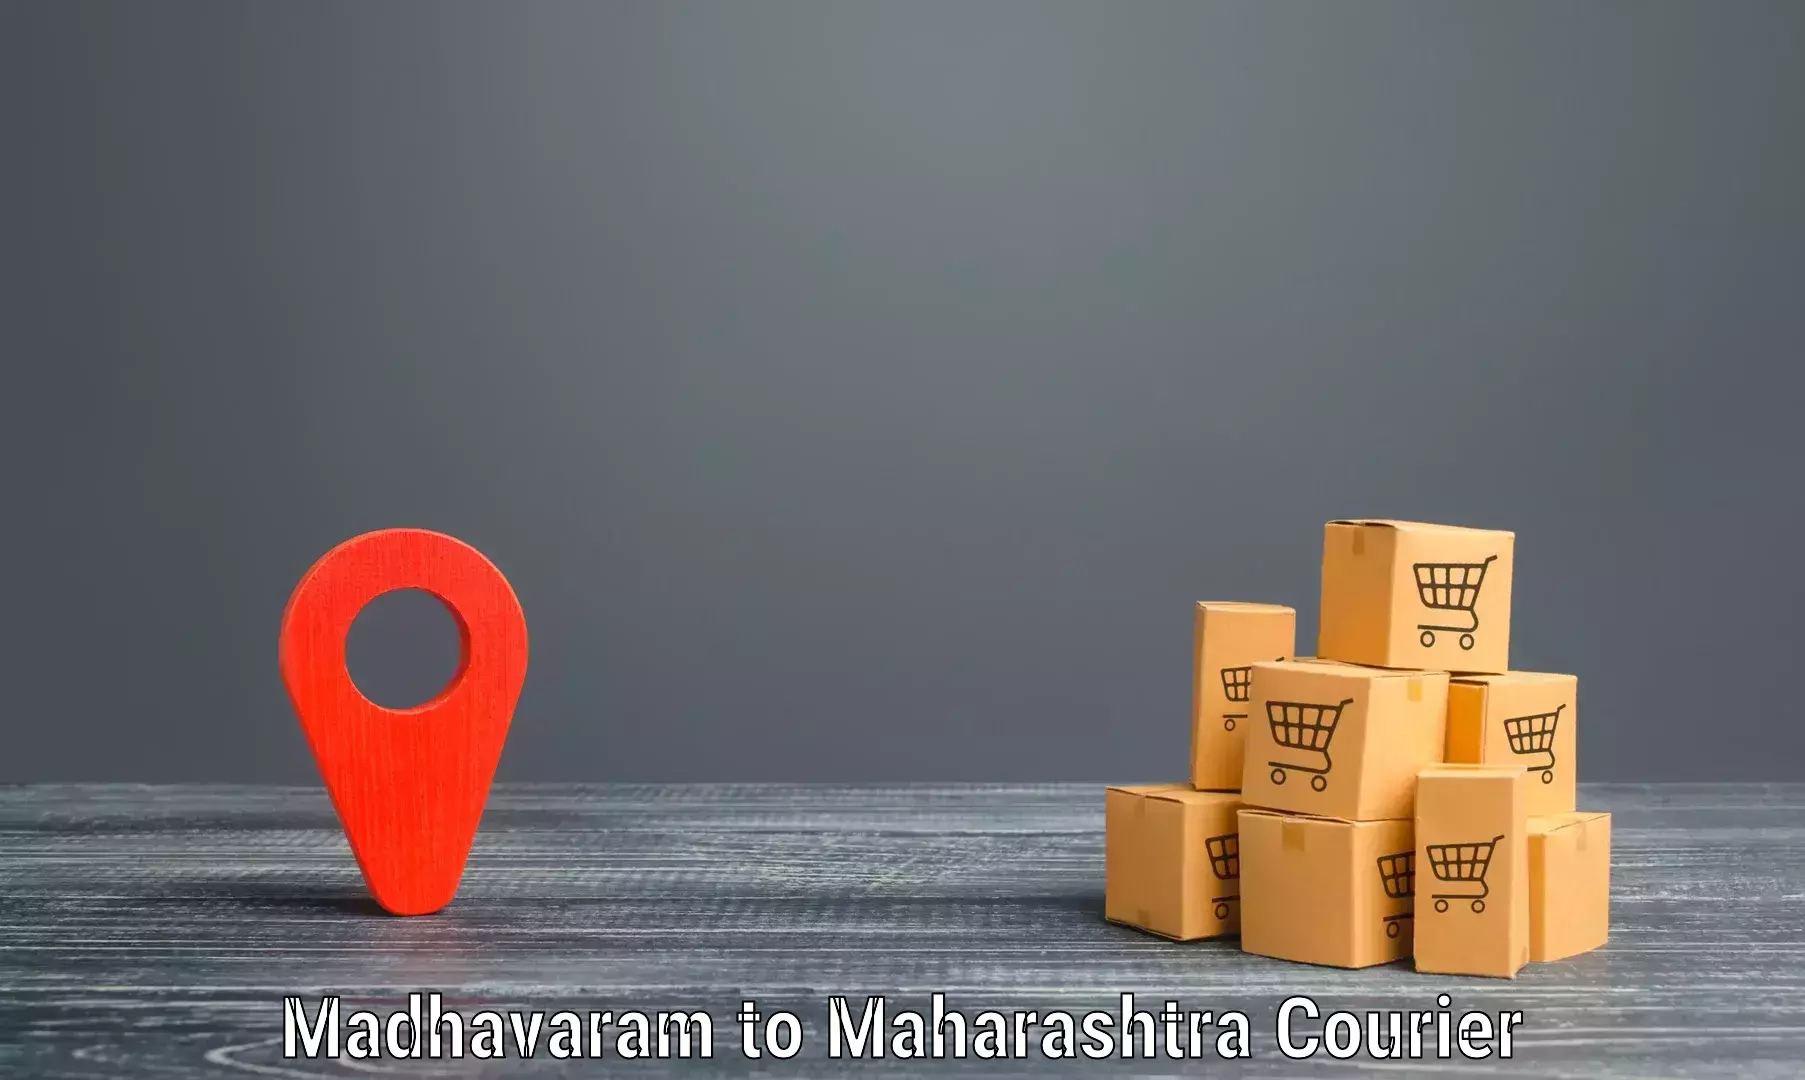 Express postal services Madhavaram to Gangapur Aurangabad